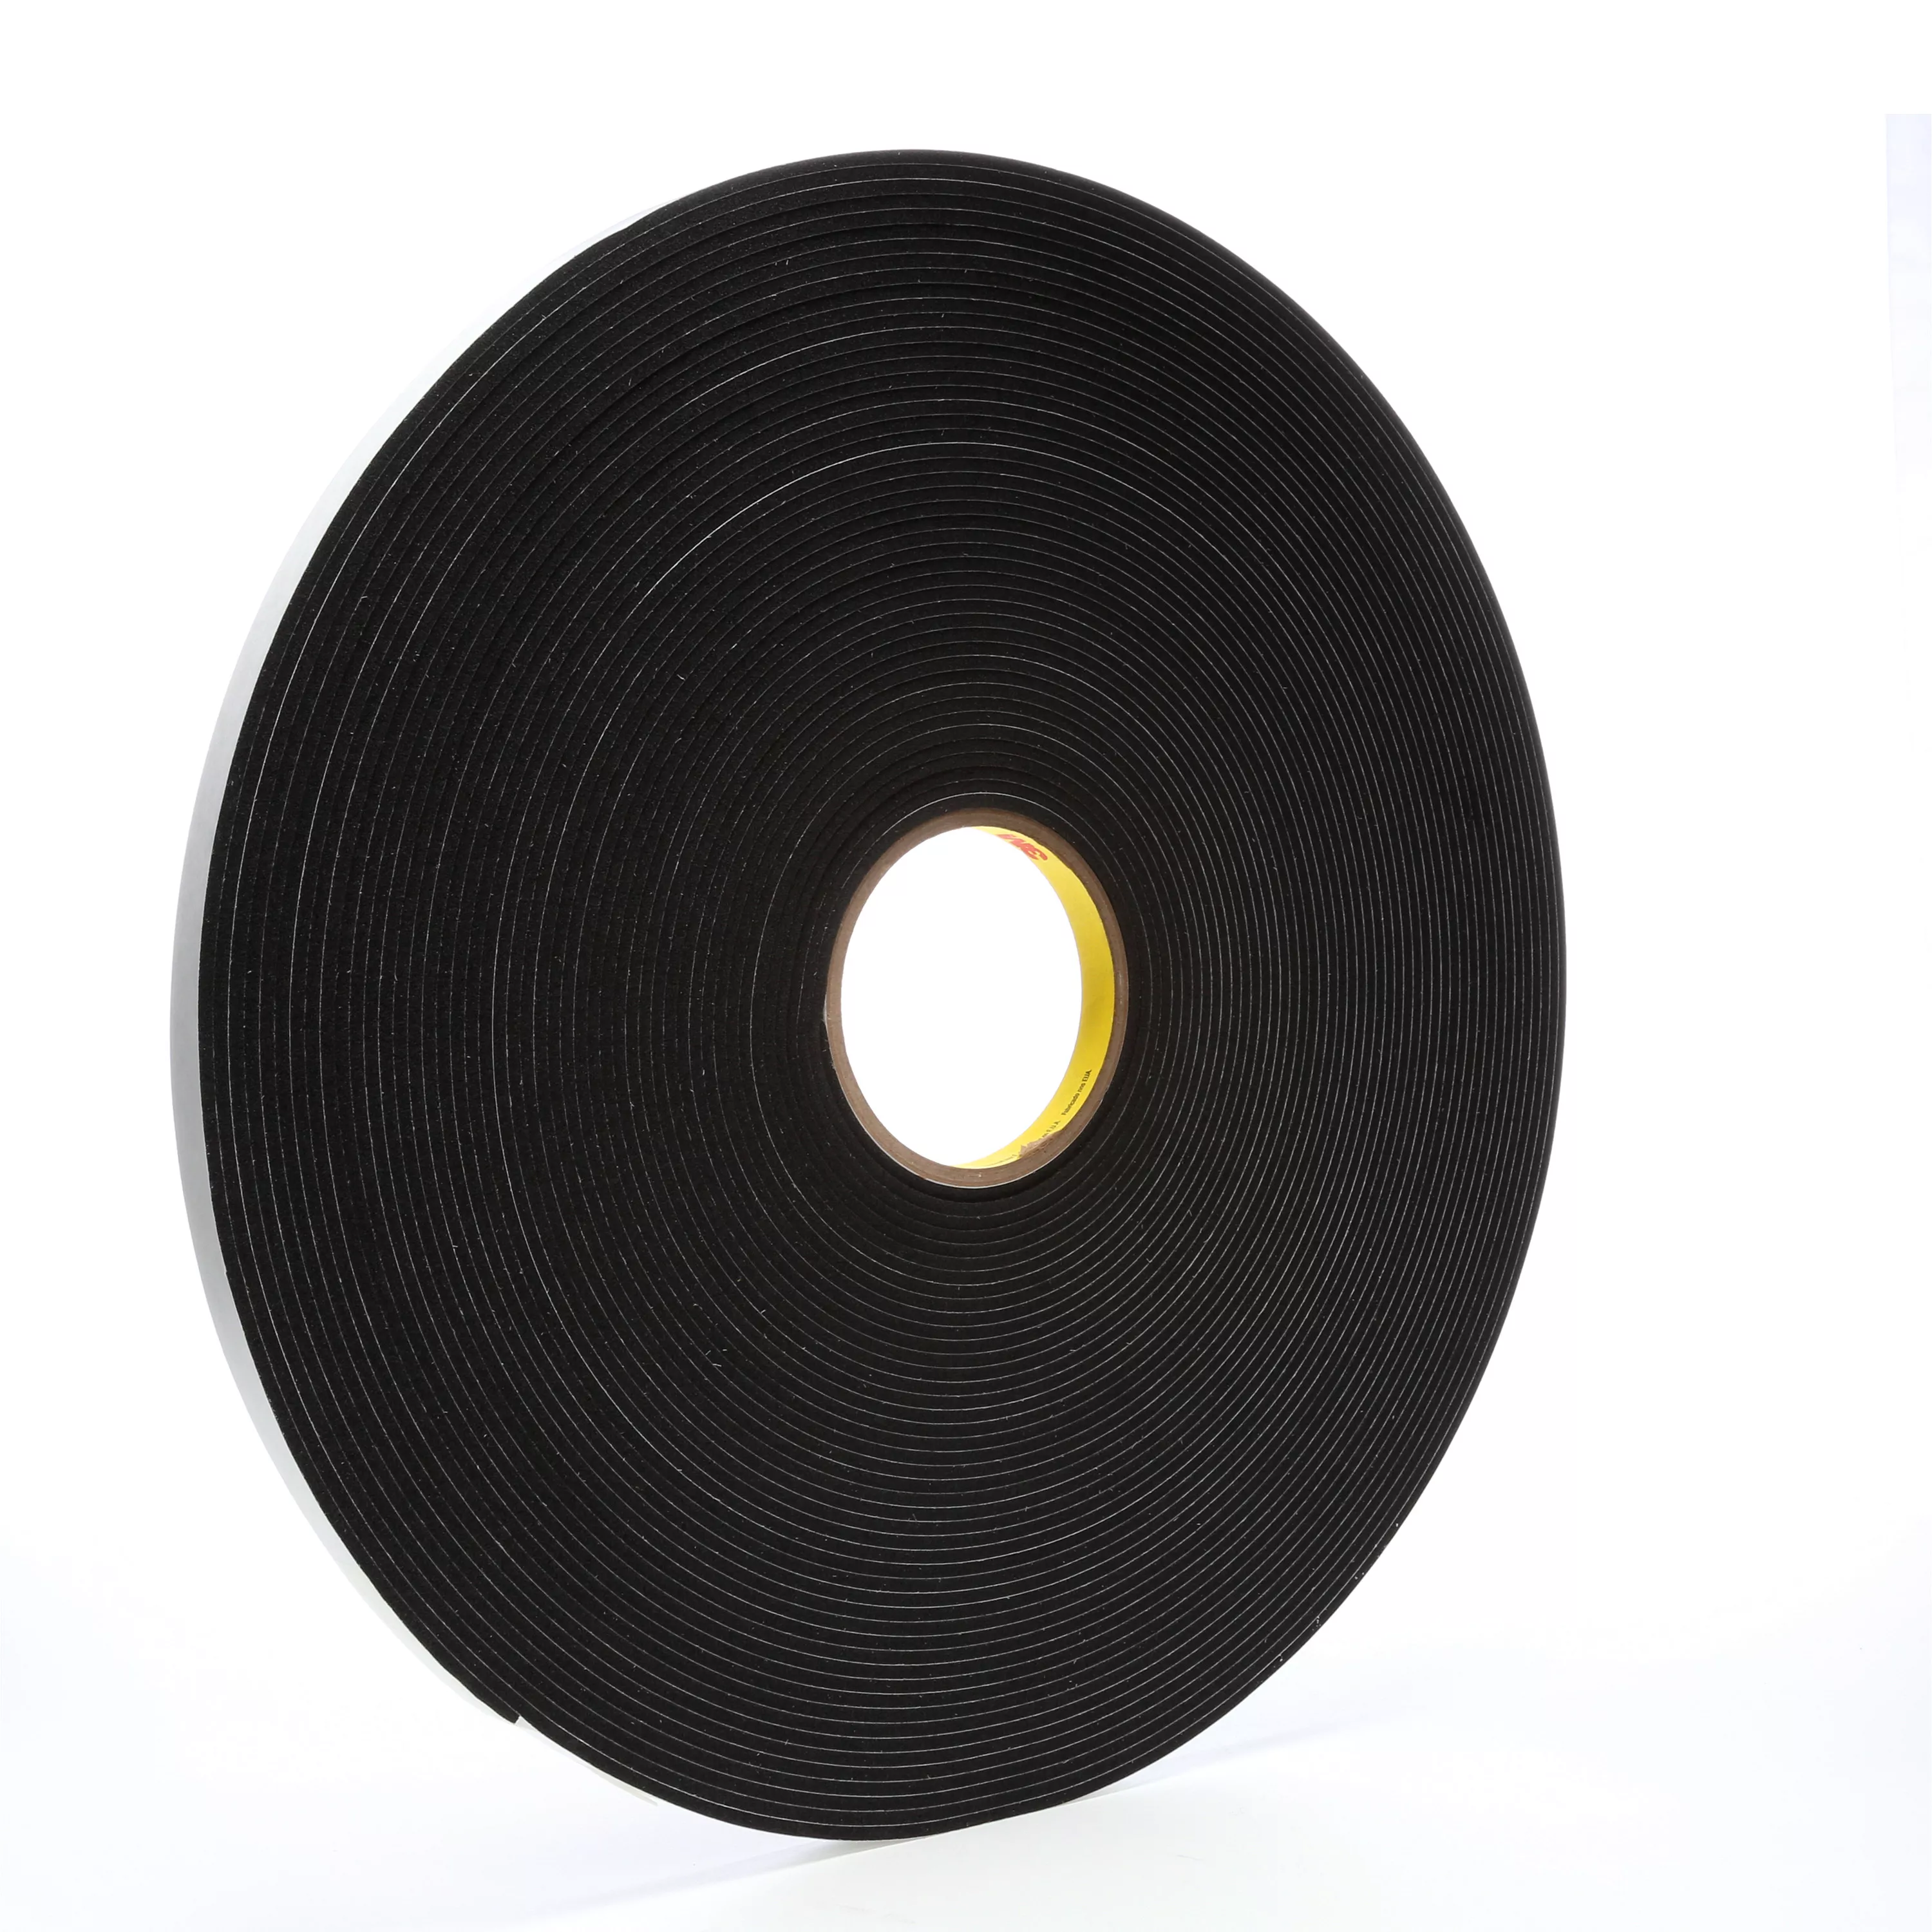 3M™ Vinyl Foam Tape 4718, Black, 1/2 in x 36 yd, 125 mil, 18 Roll/Case